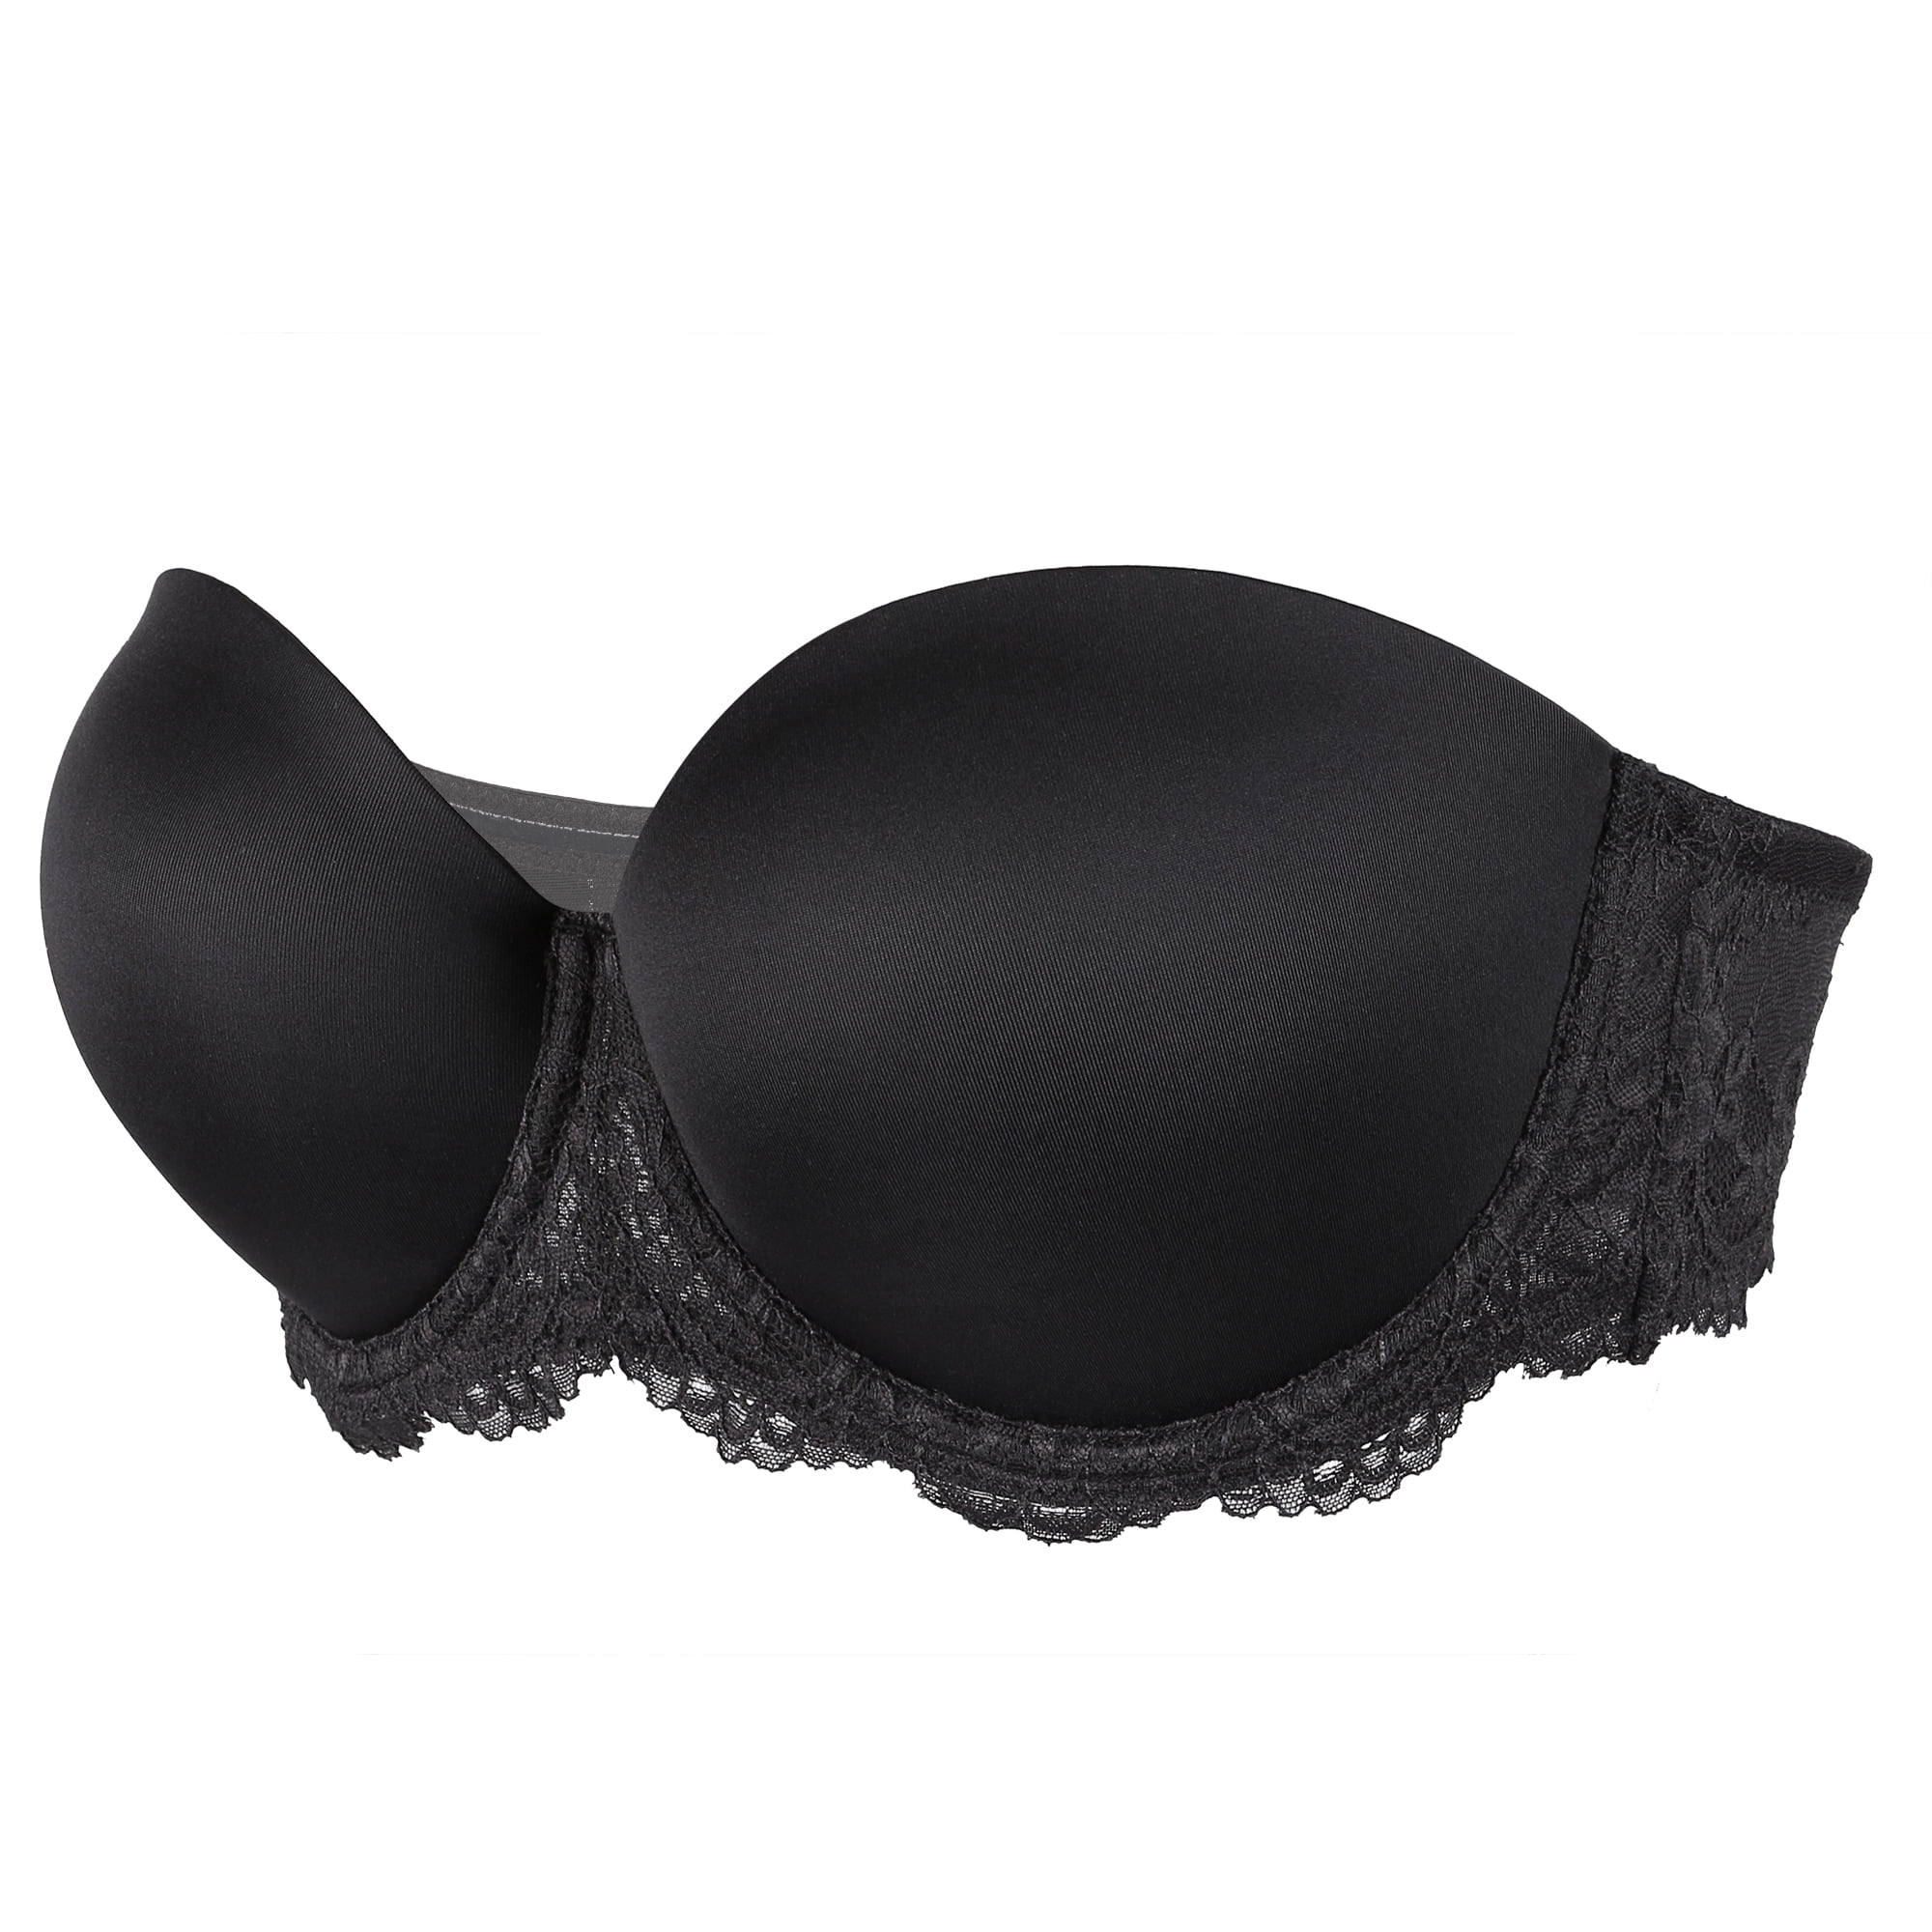 Victoria's Secret Size 32C 10C Black Lace Multiway Festival Bra